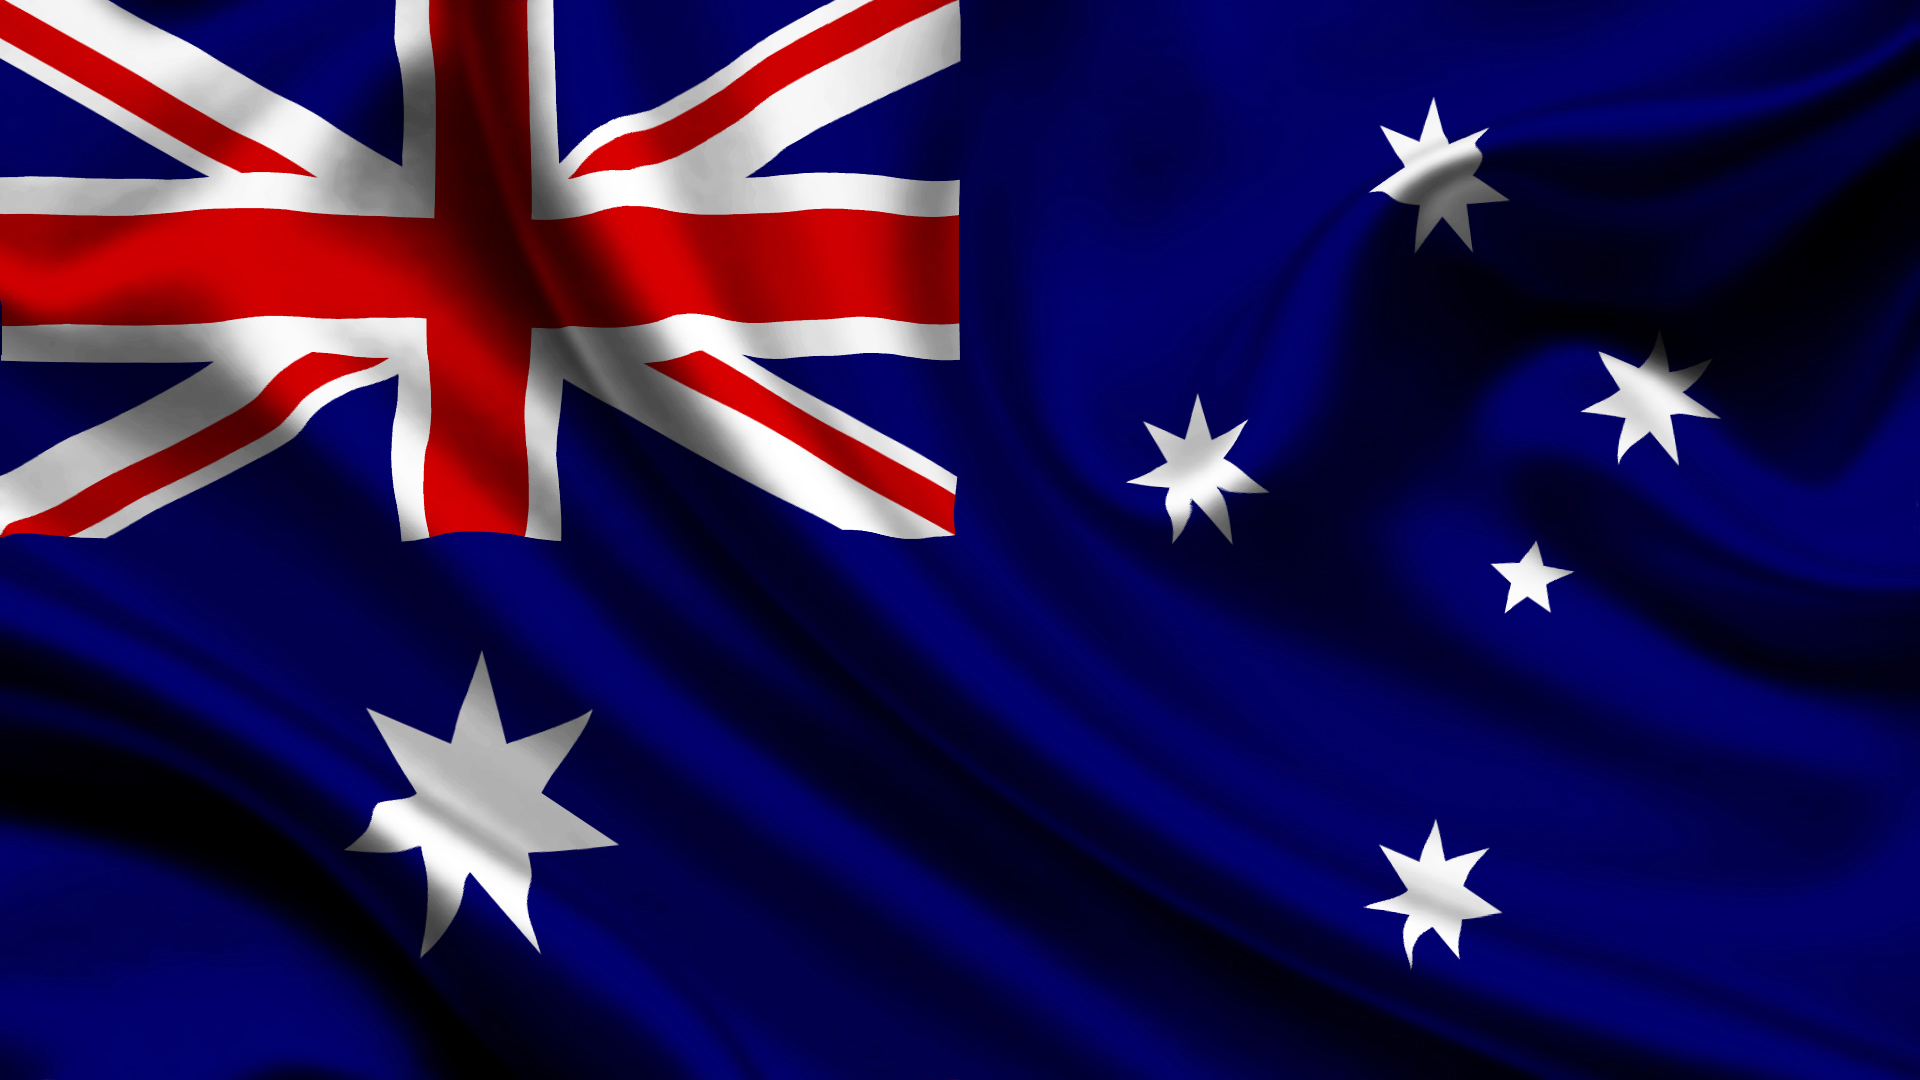 australien iphone wallpaper,flagge,flagge der vereinigten staaten,kobaltblau,elektrisches blau,himmel